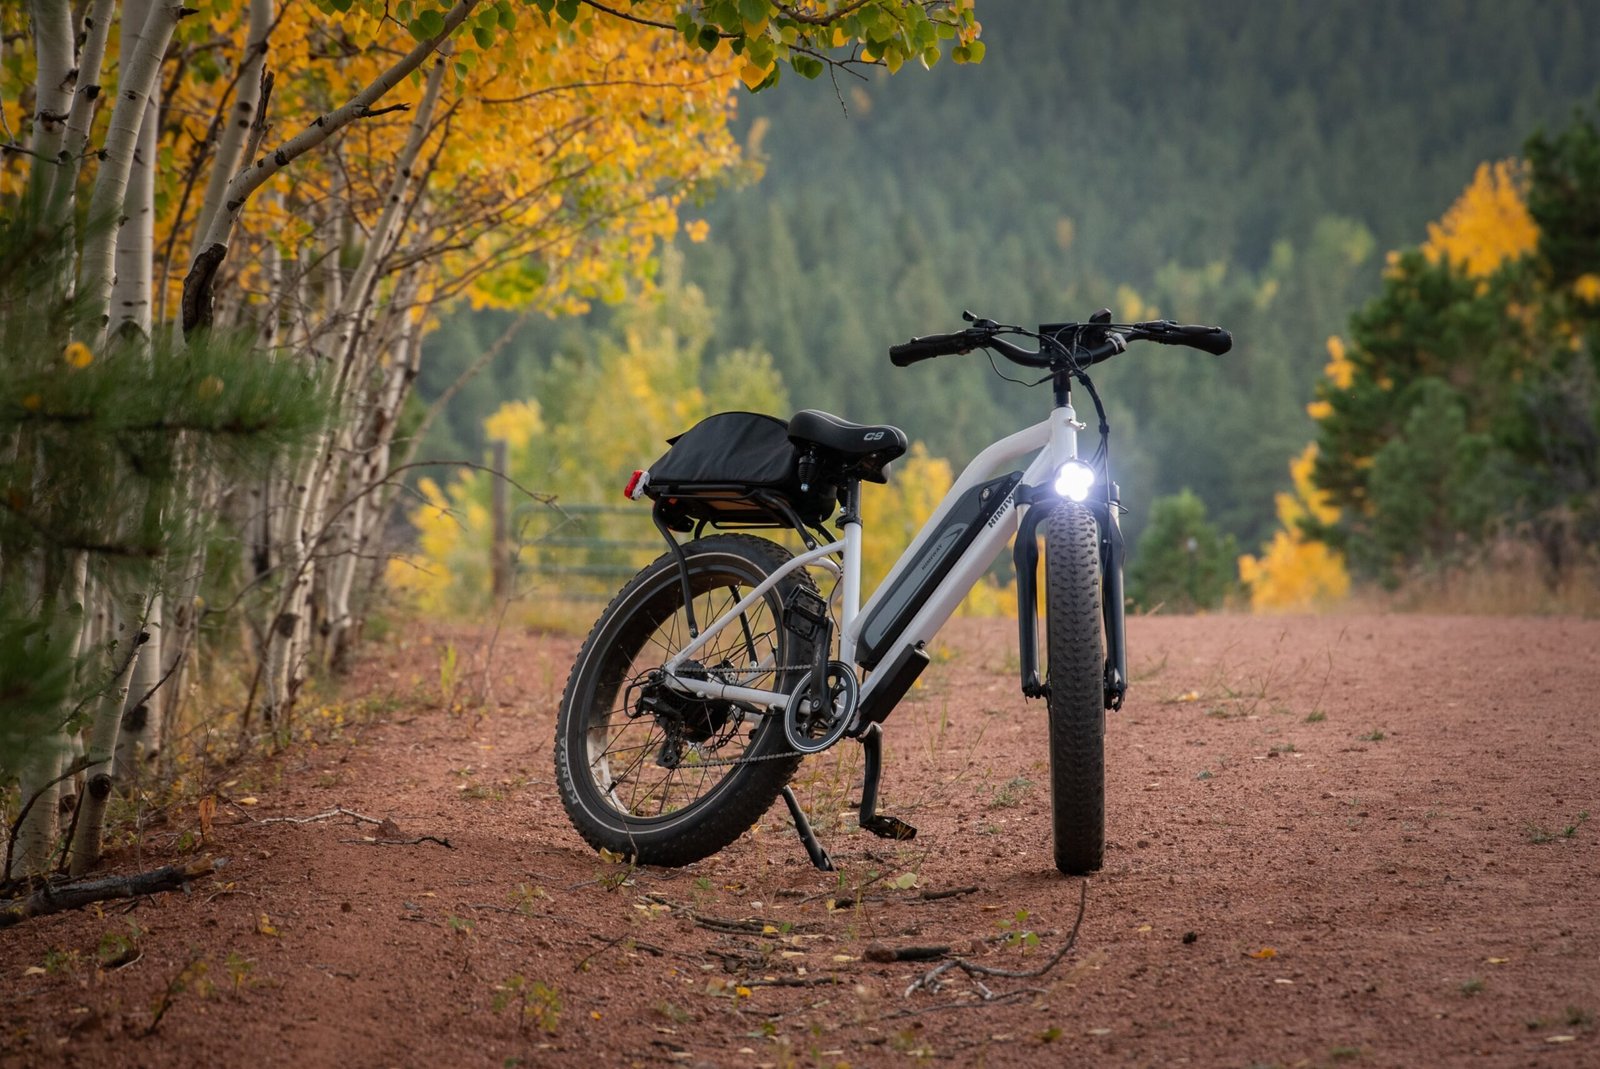 Take A Look At Juiced Bikes’ New 1,000-Watt Scrambler X2